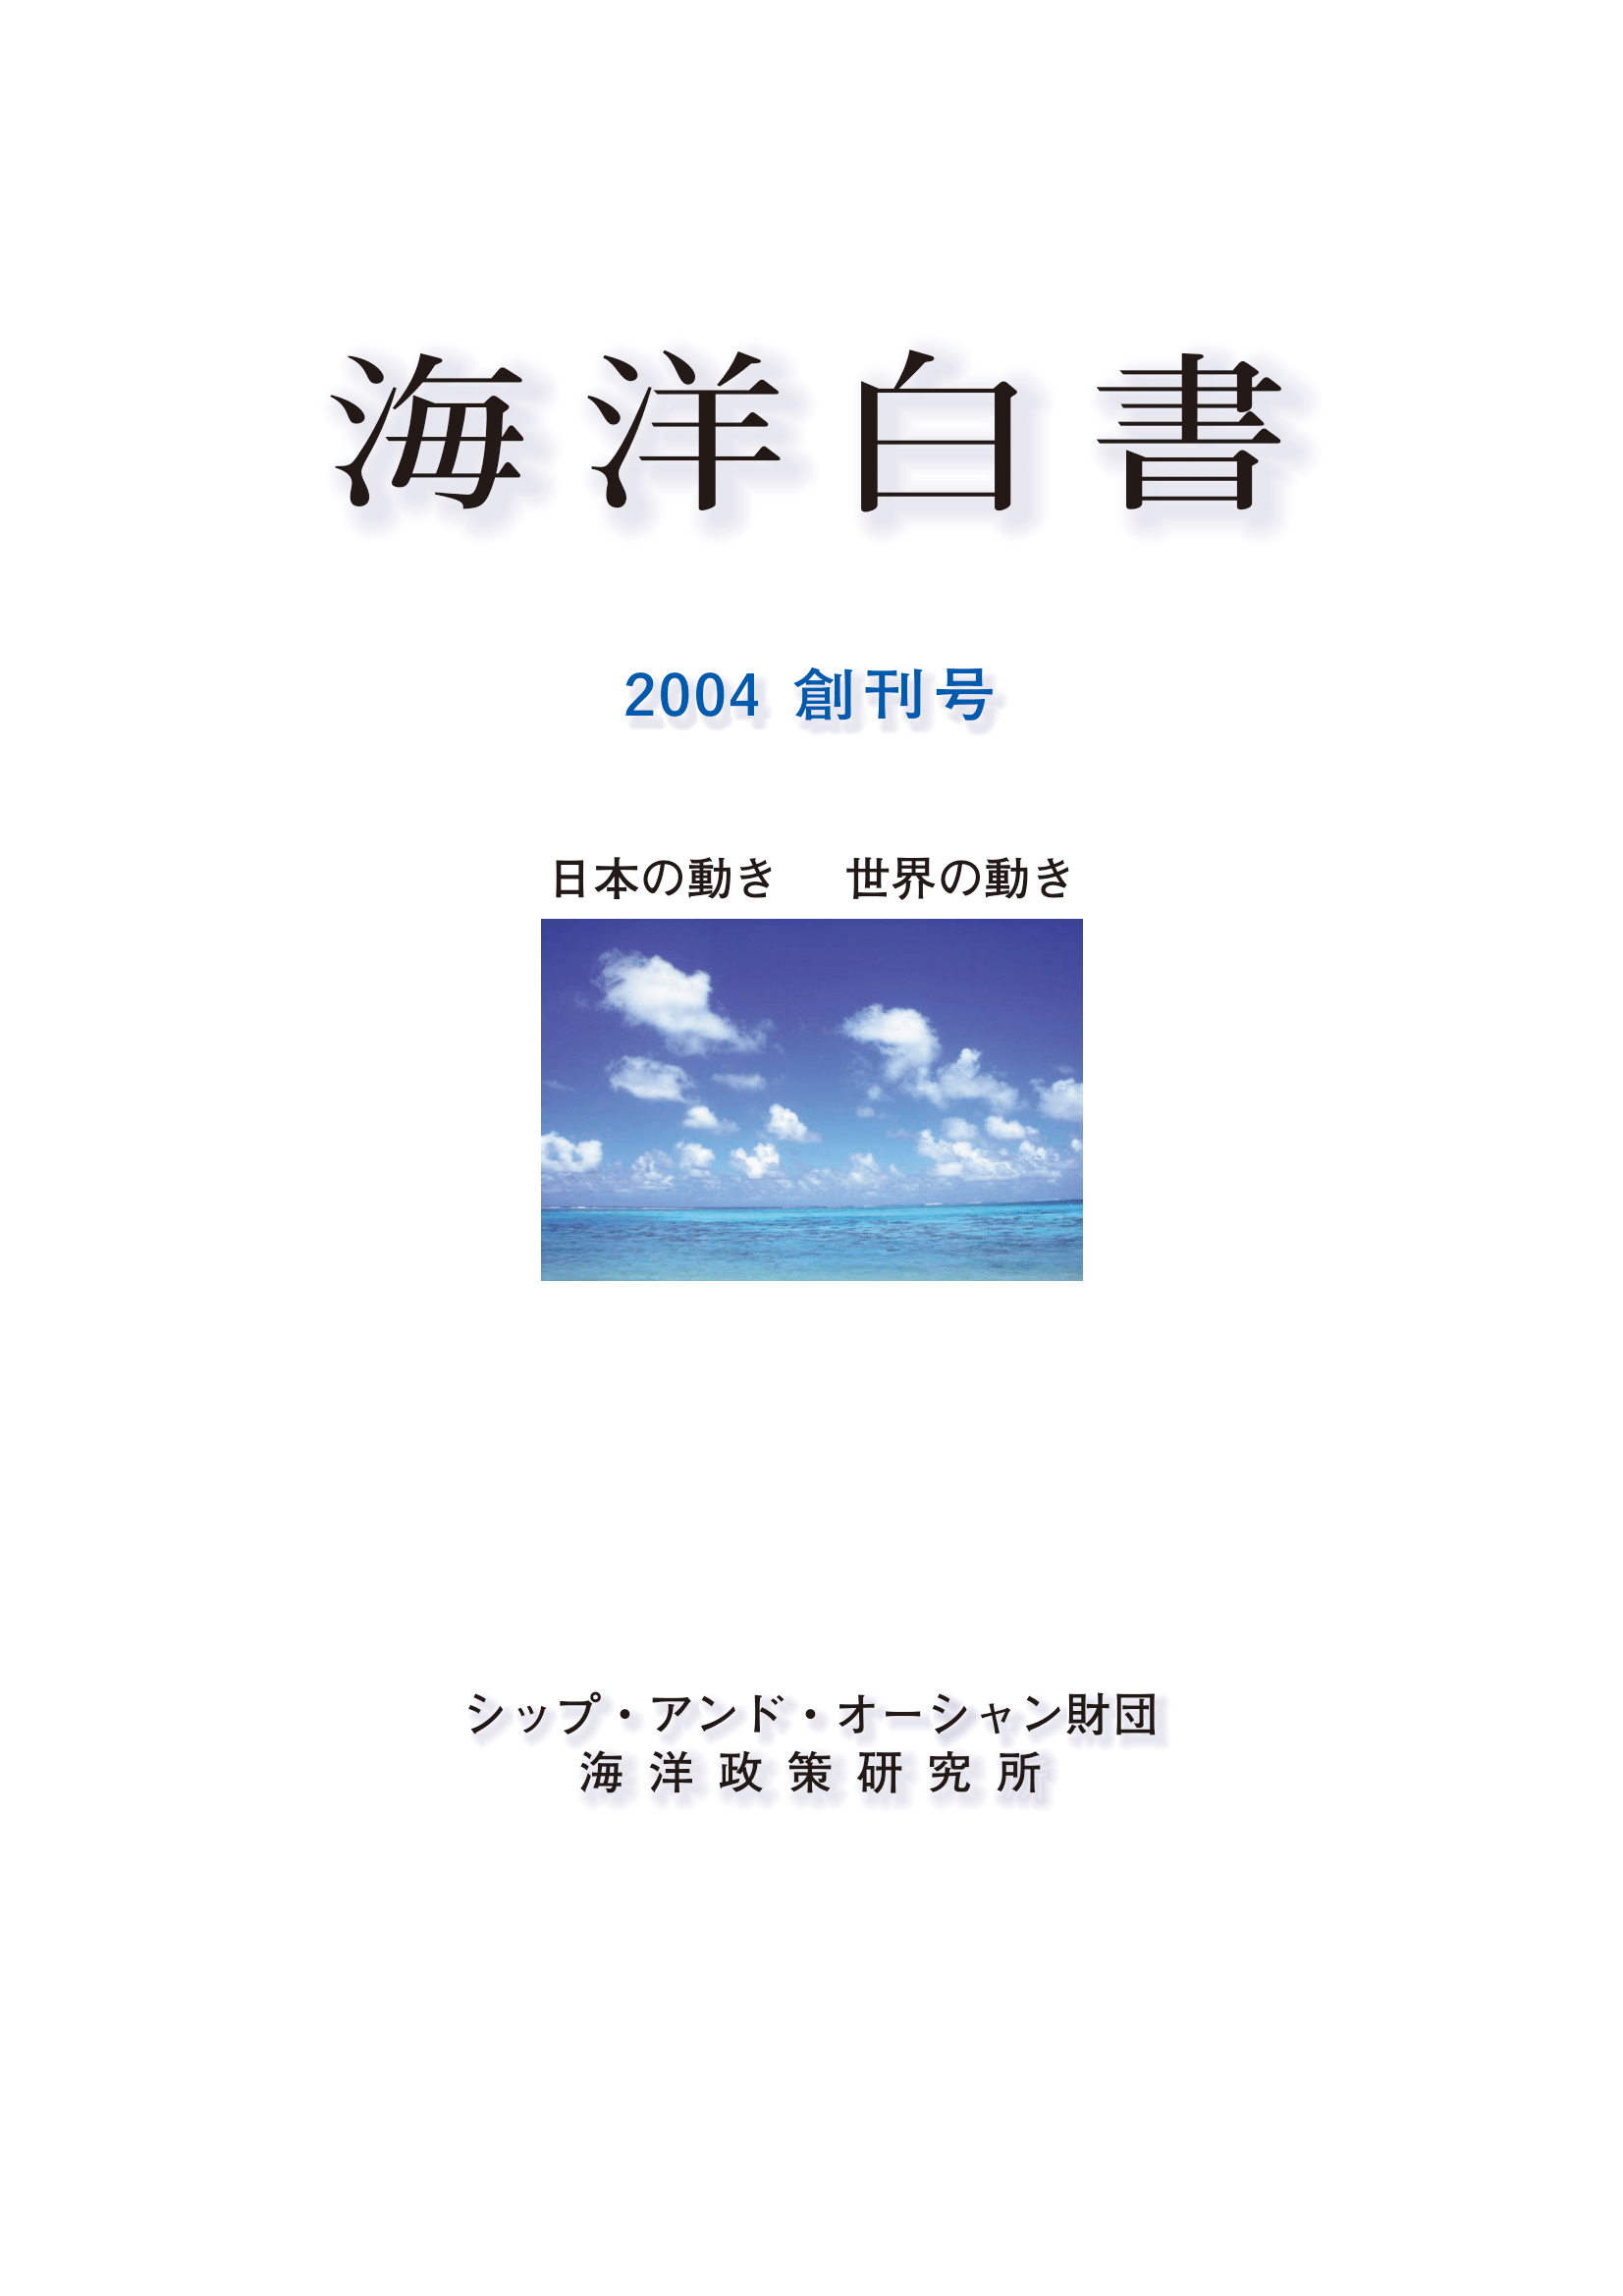 海洋白書 2004創刊号 日本の動き 世界の動き